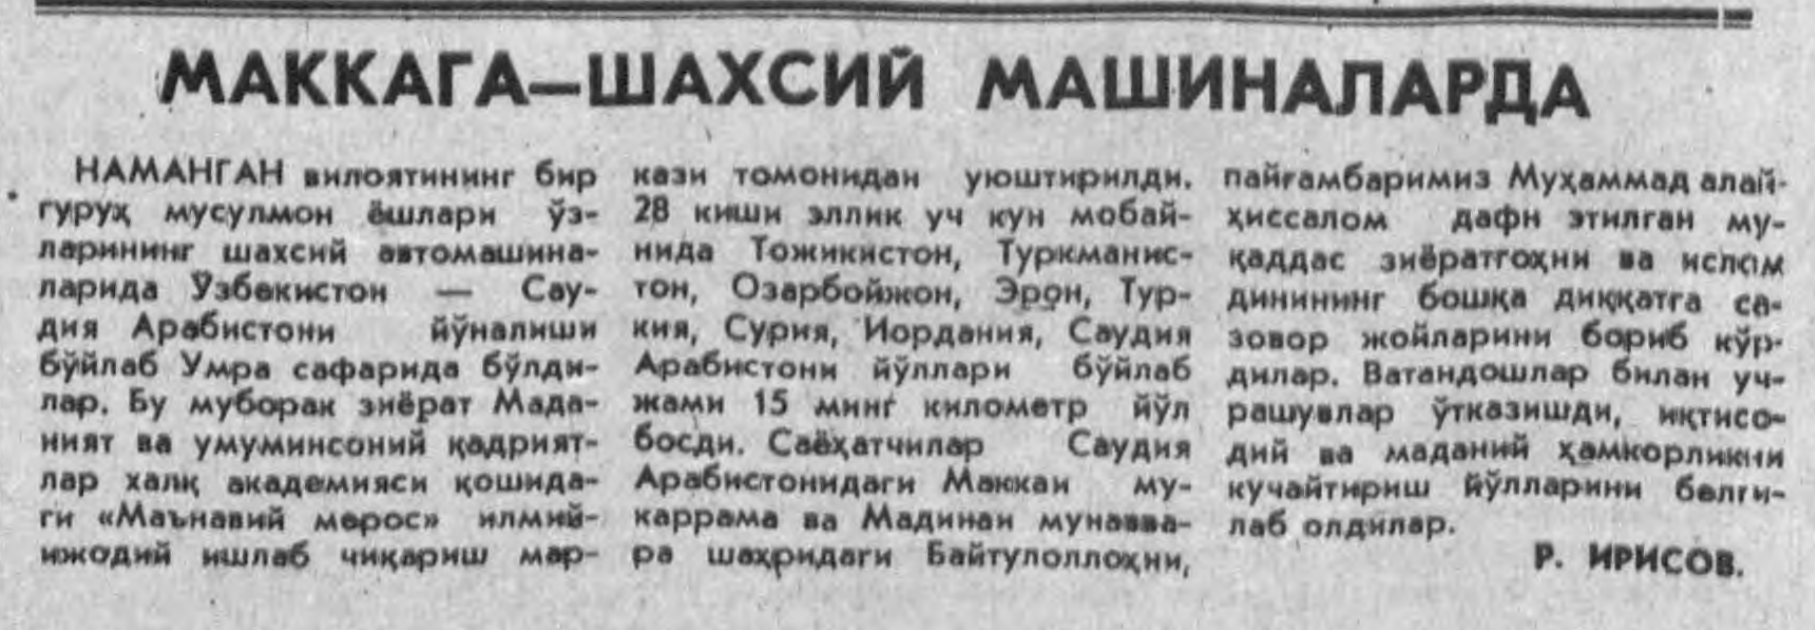 «Халқ сўзи» газетасининг 1992 йил 18 апрель сонидан лавҳа